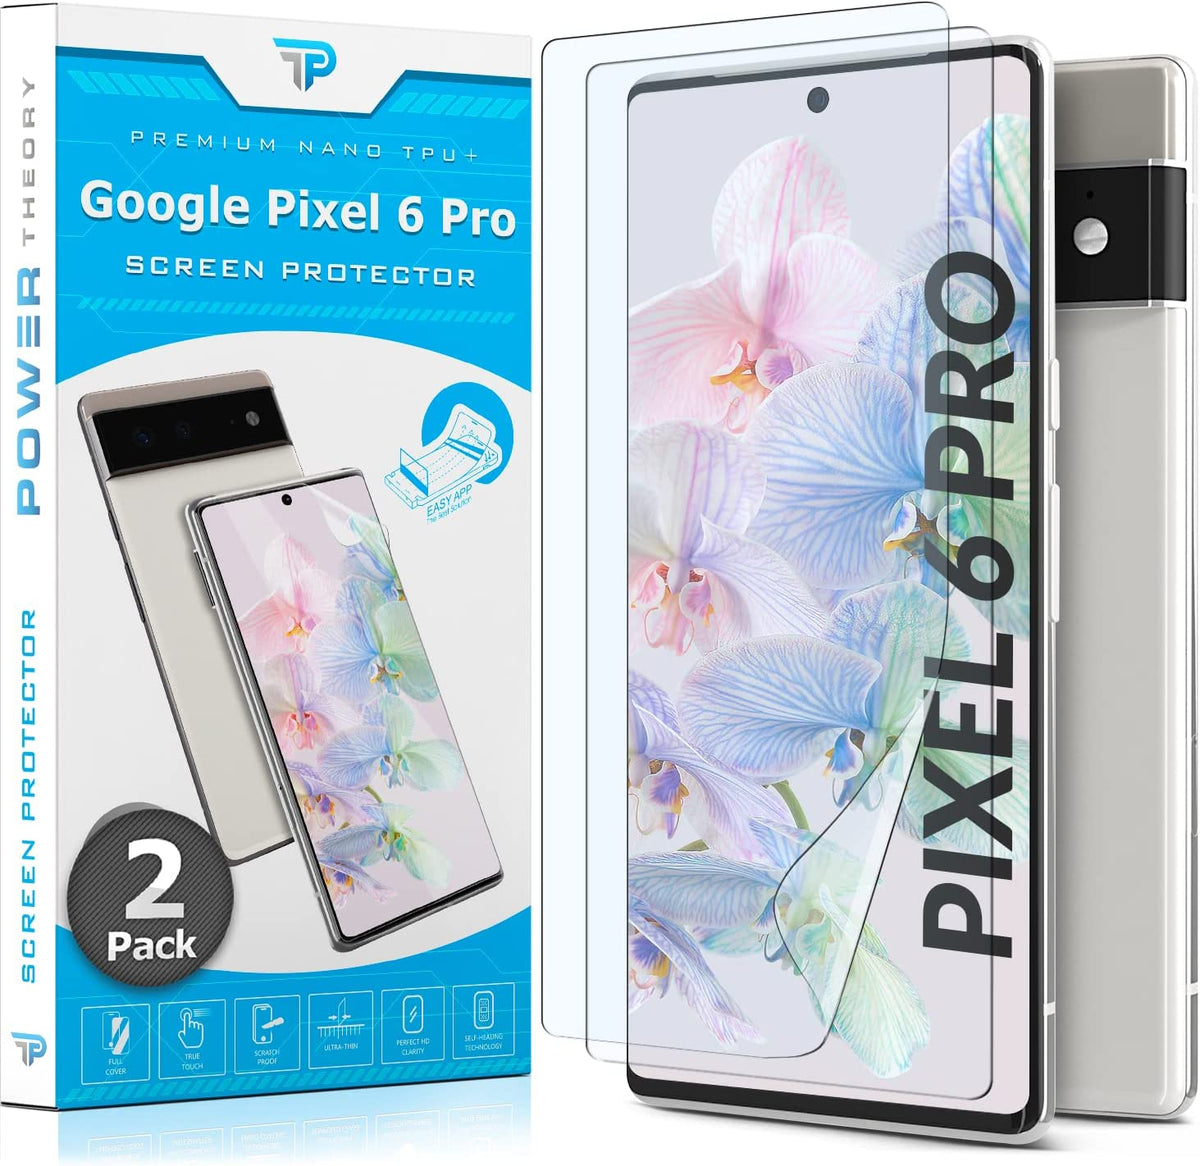 Power Theory Schutzfolie für Google Pixel 6 PRO Displayschutz [KEIN GLAS] 3D Nano-Tech Folie, 100% Fingerabdrucksensor, Einfache Installation [2 Stück] Cover